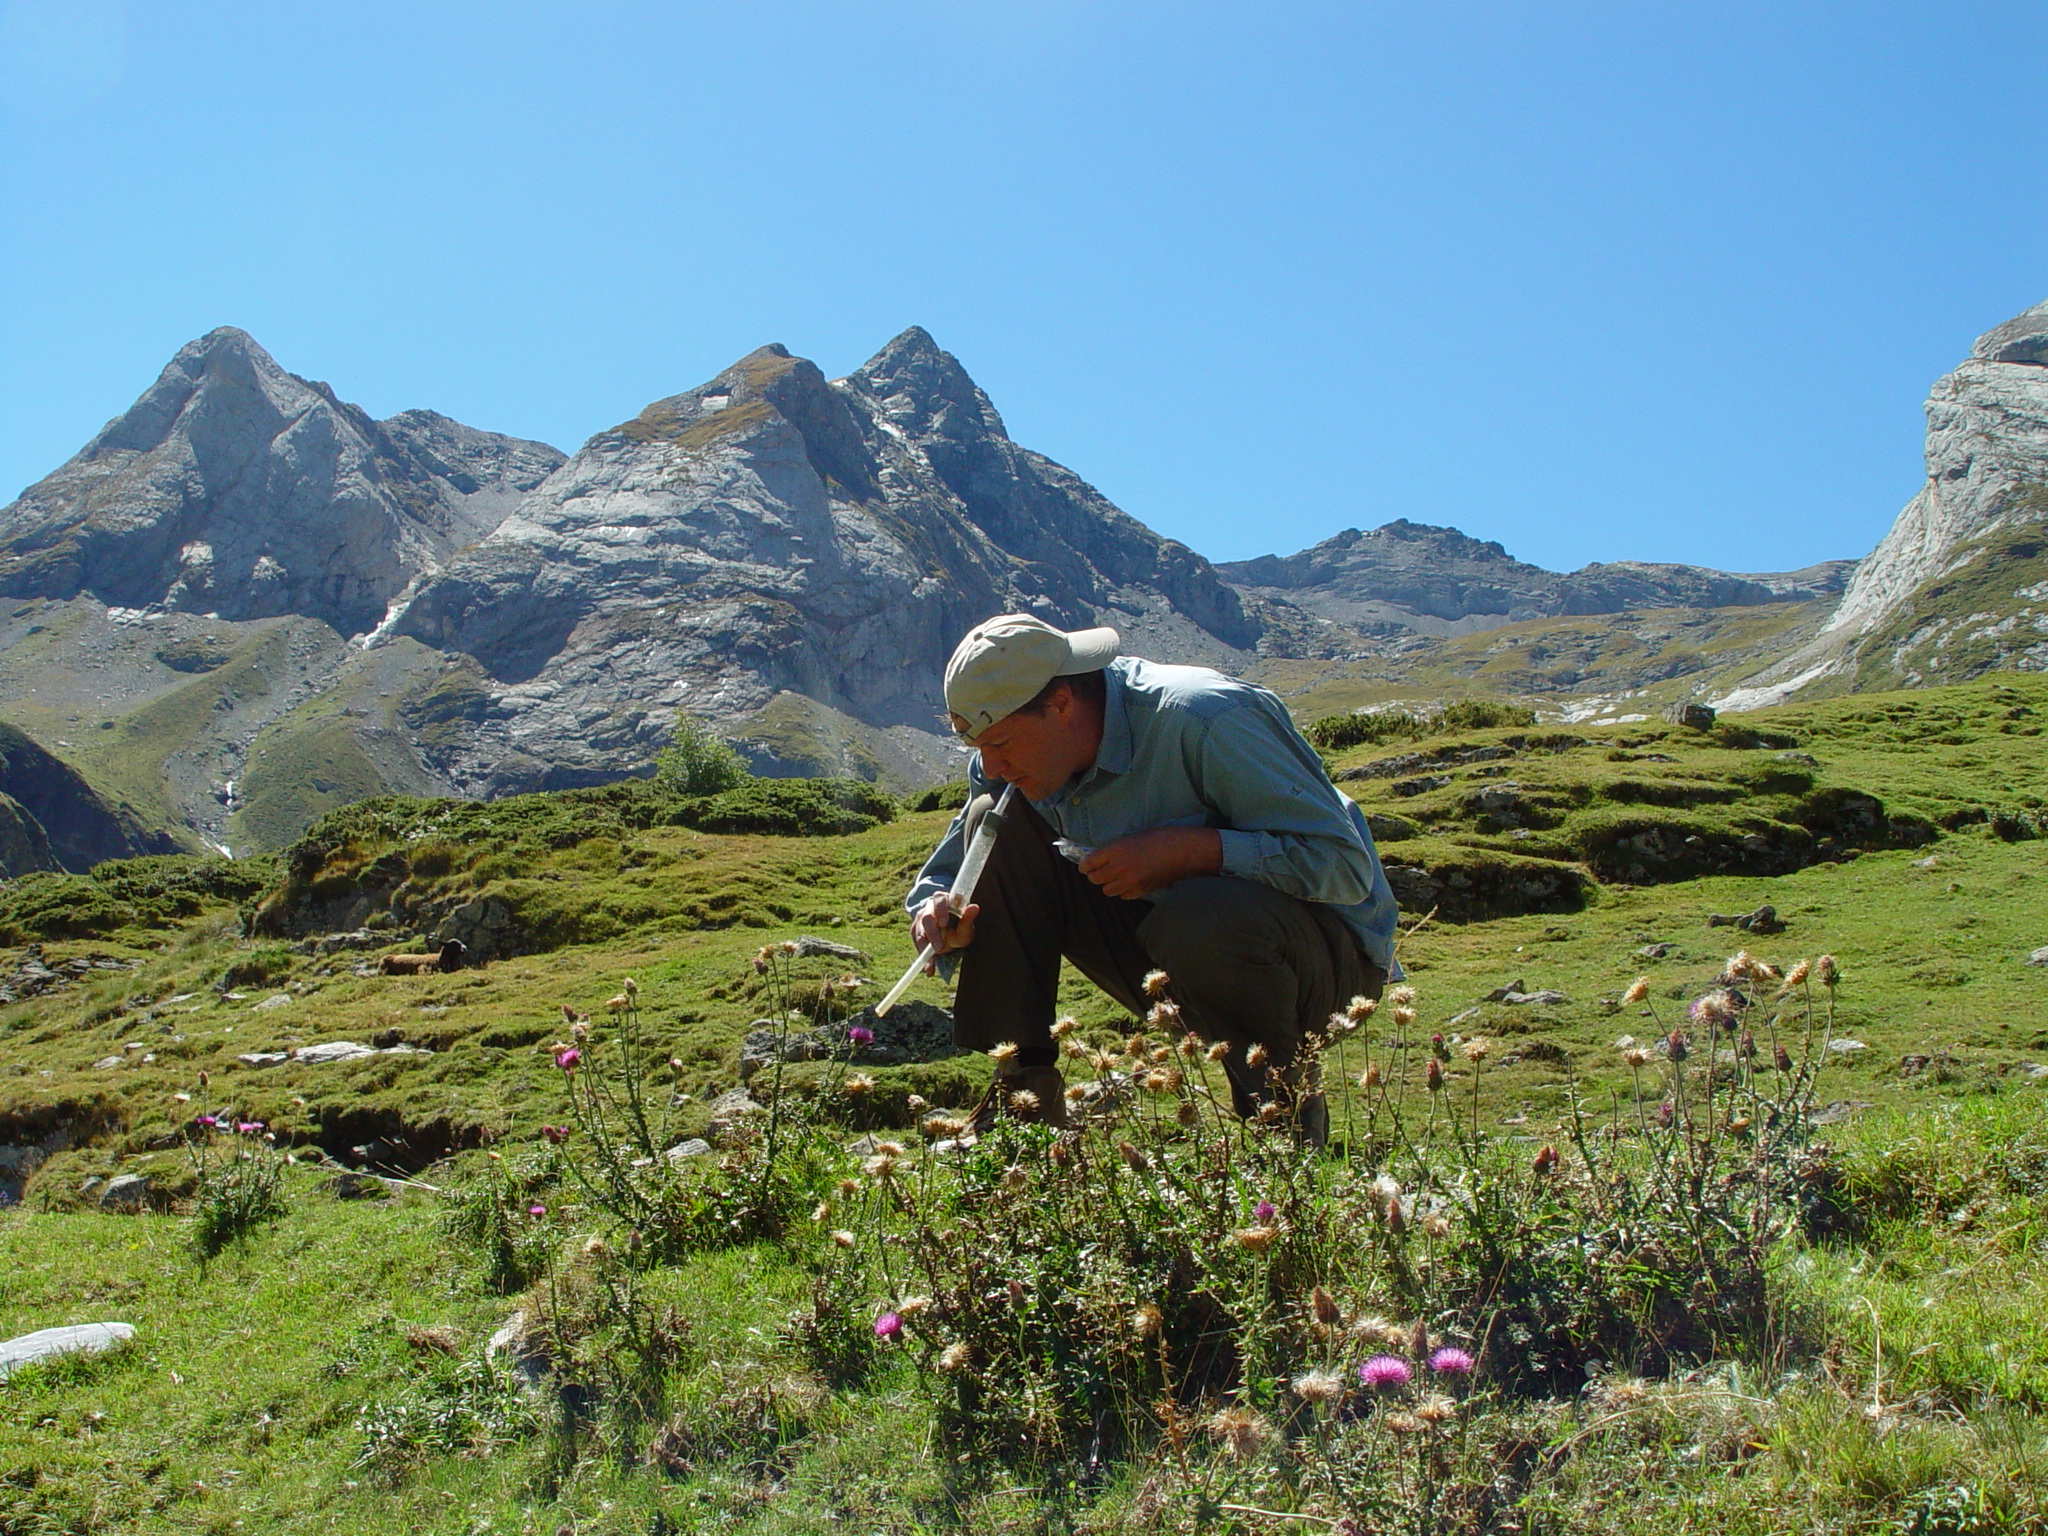 Ecoloog Koos Biesmeijer ving en bestudeerde verschillende hommelsoorten in de Franse Pyreneeën. 